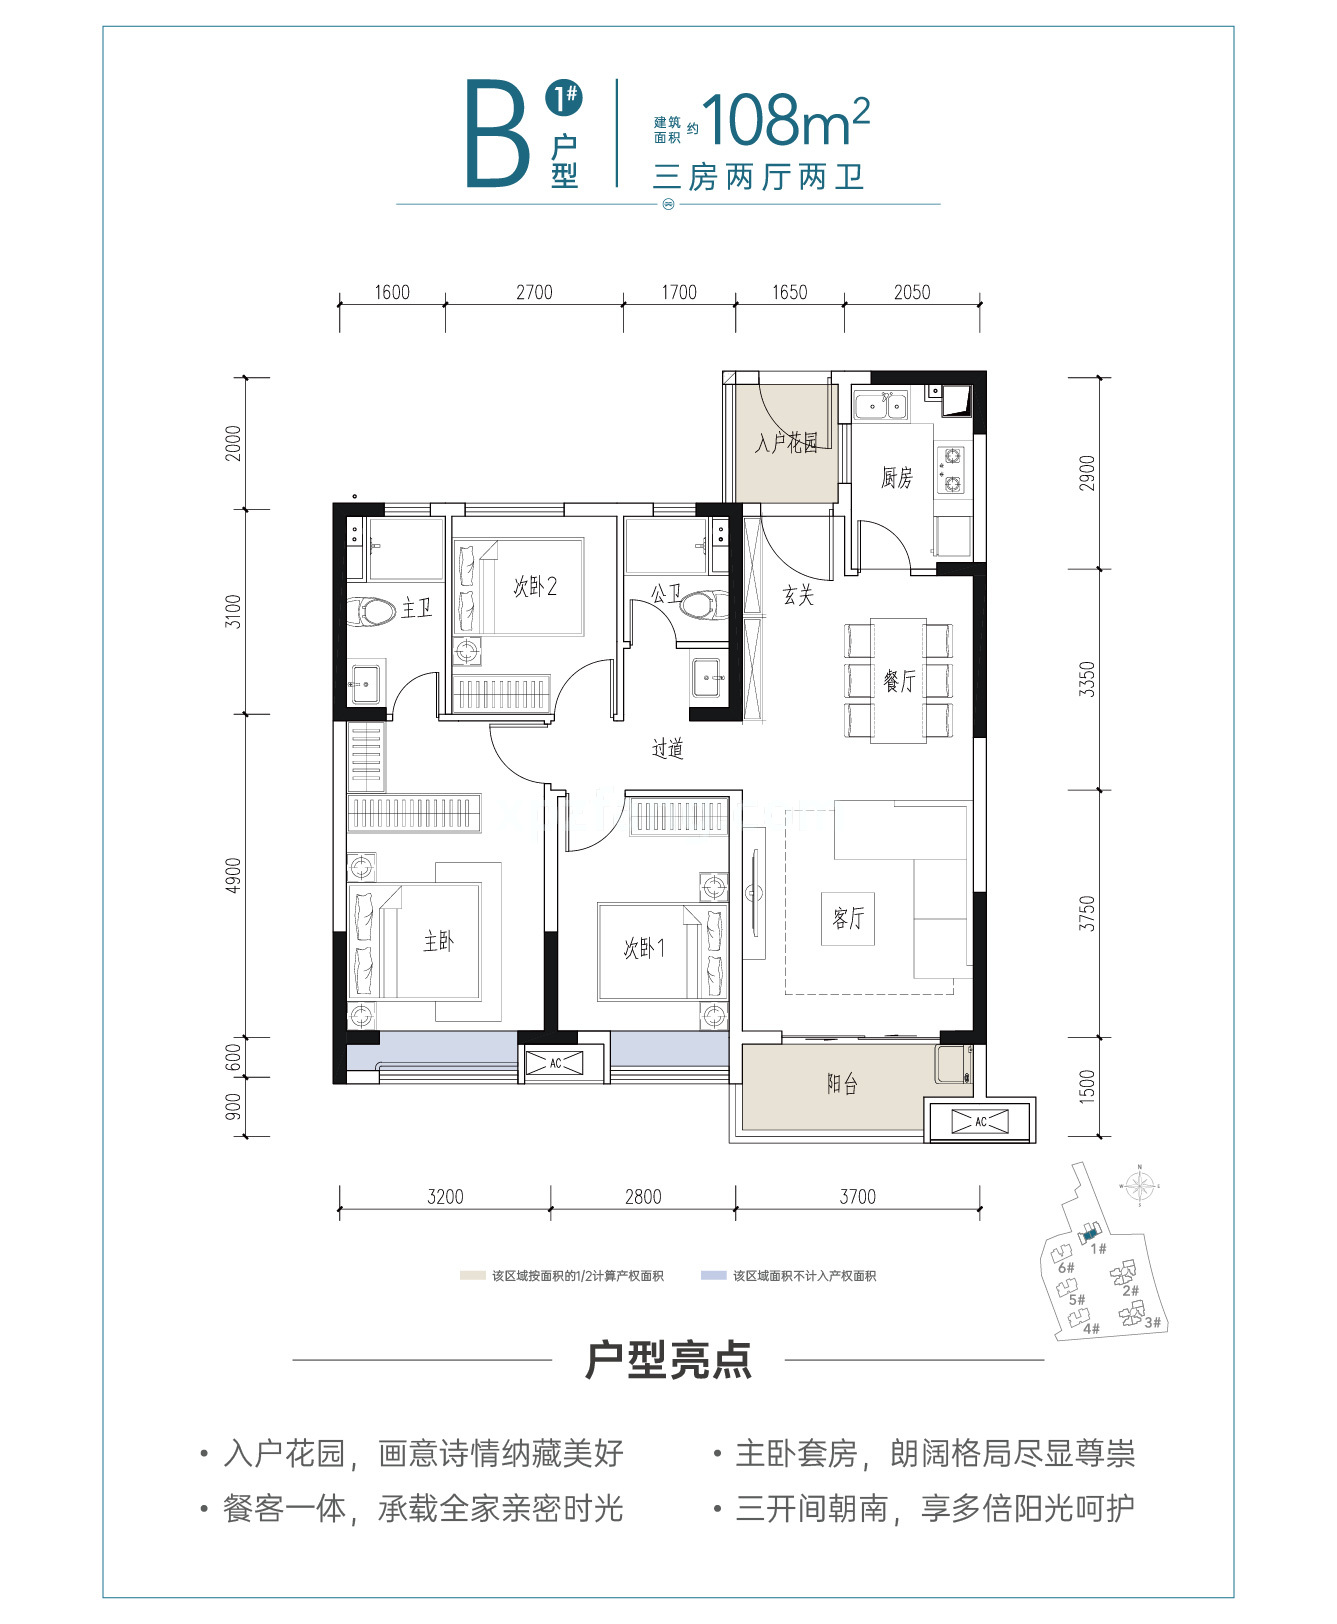 中国铁建·江语天著 高层 B1户型建筑面积108㎡3房2厅2卫